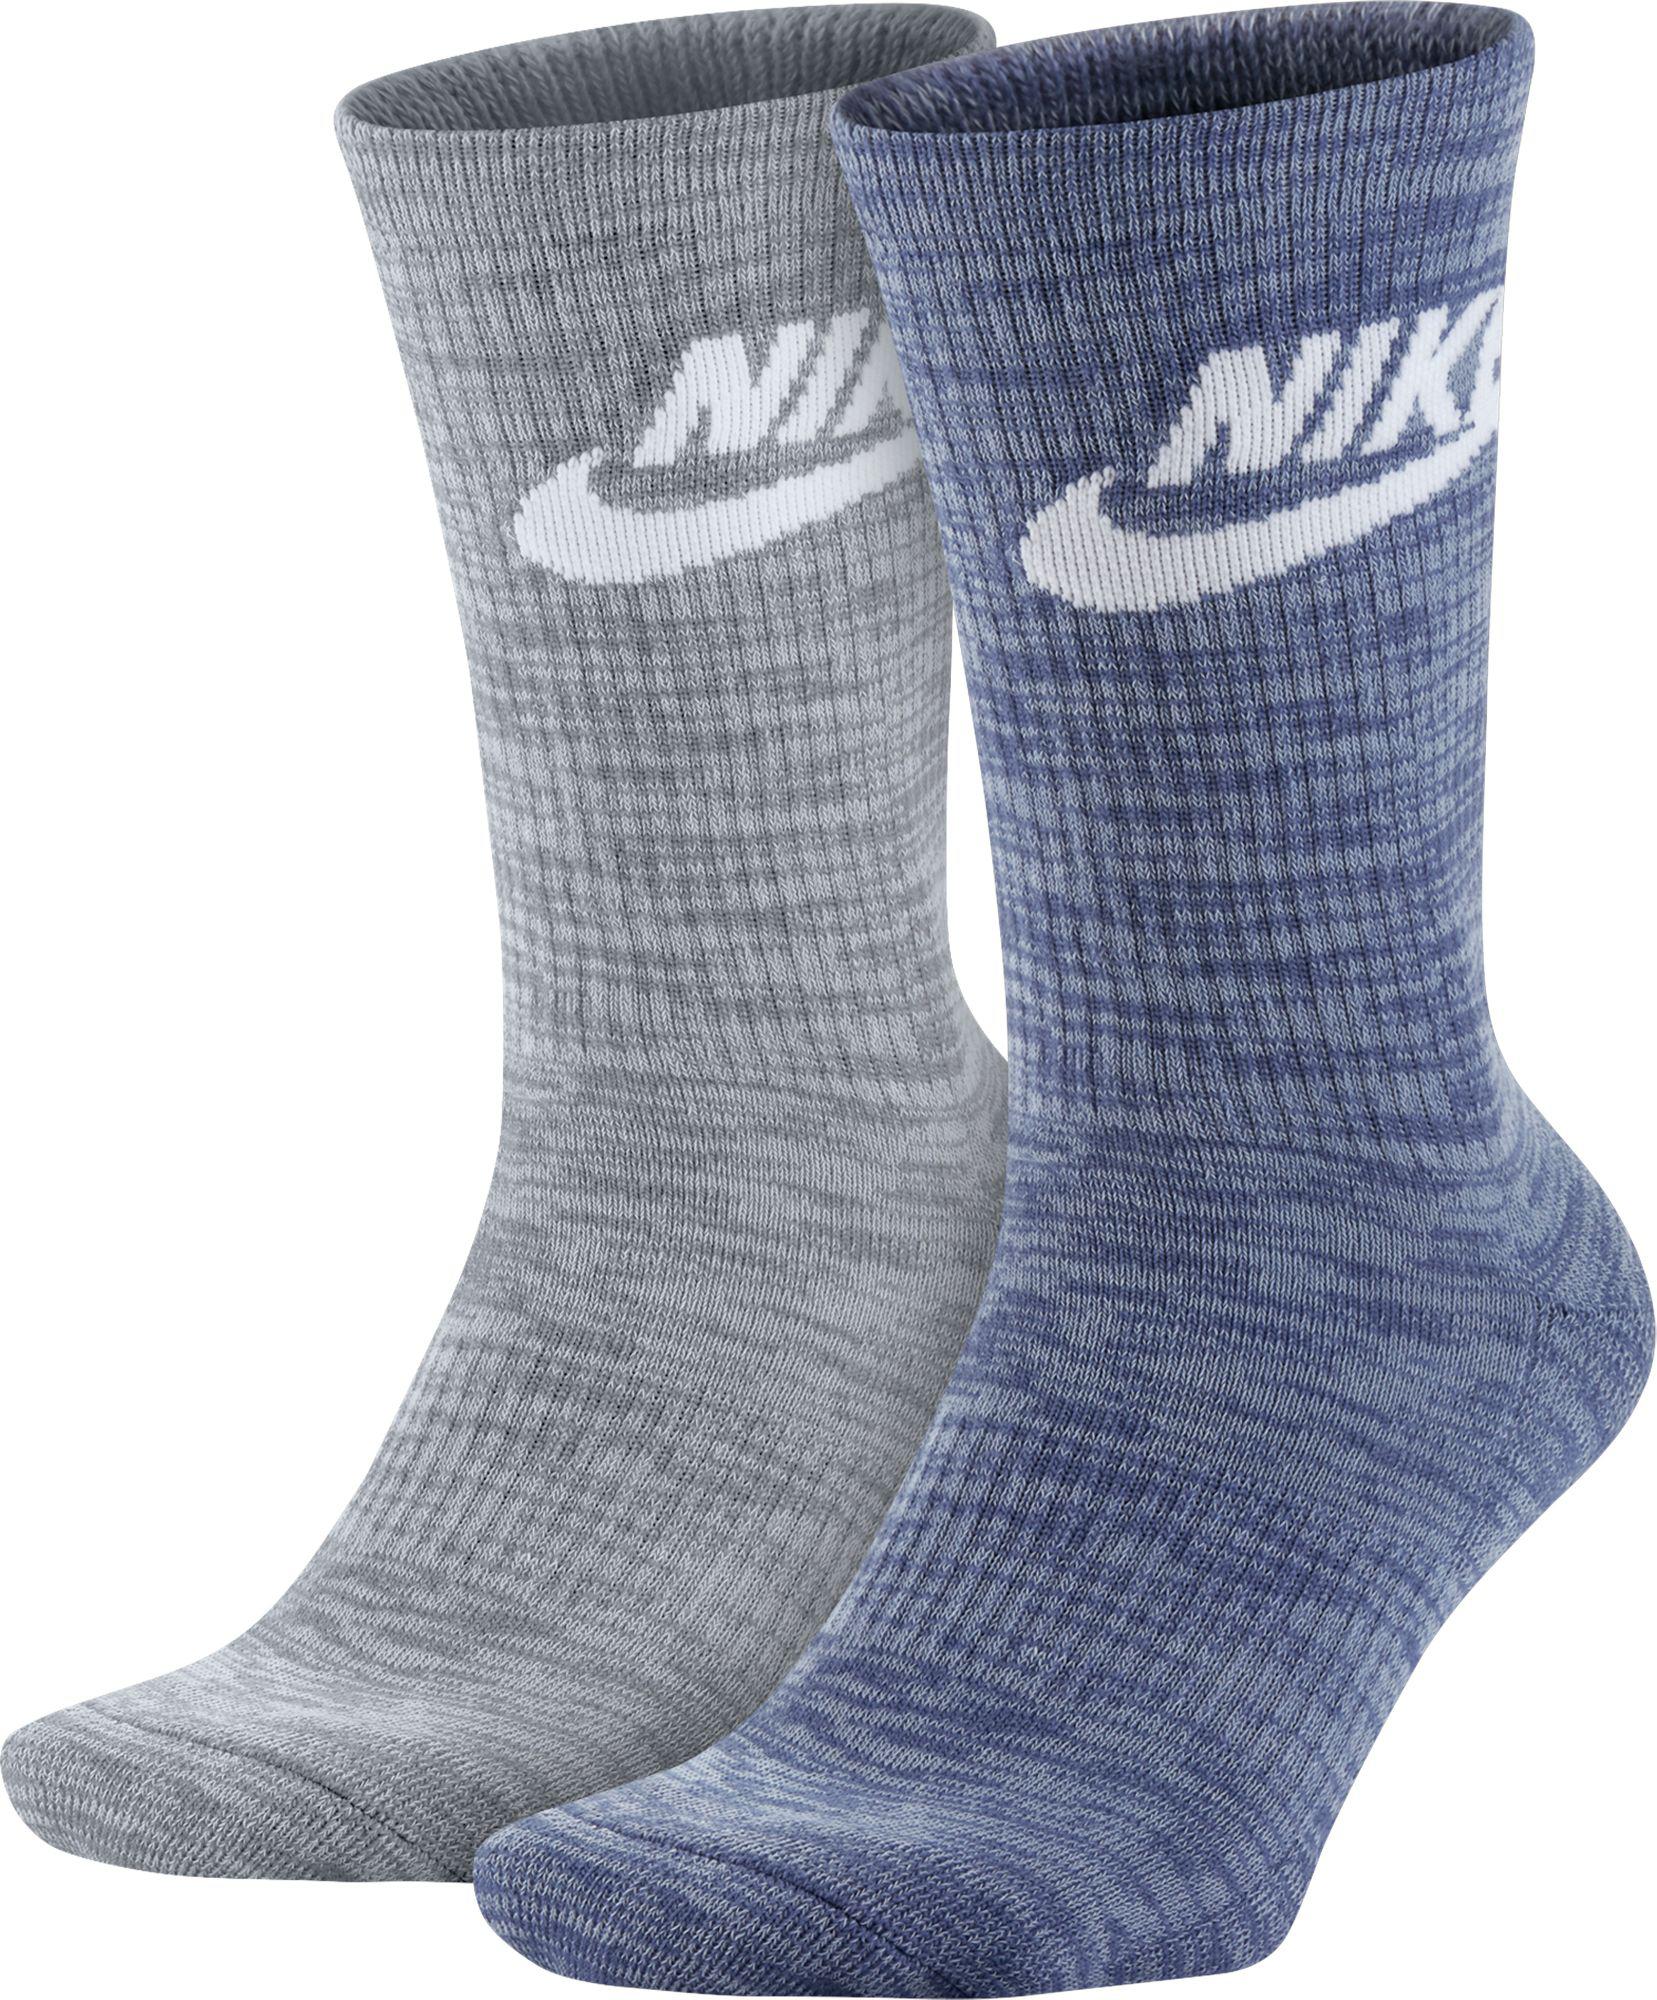 Nike Cotton Sportswear Advance Crew Socks 2 Pack in Grey/Blue (Blue) for  Men - Lyst